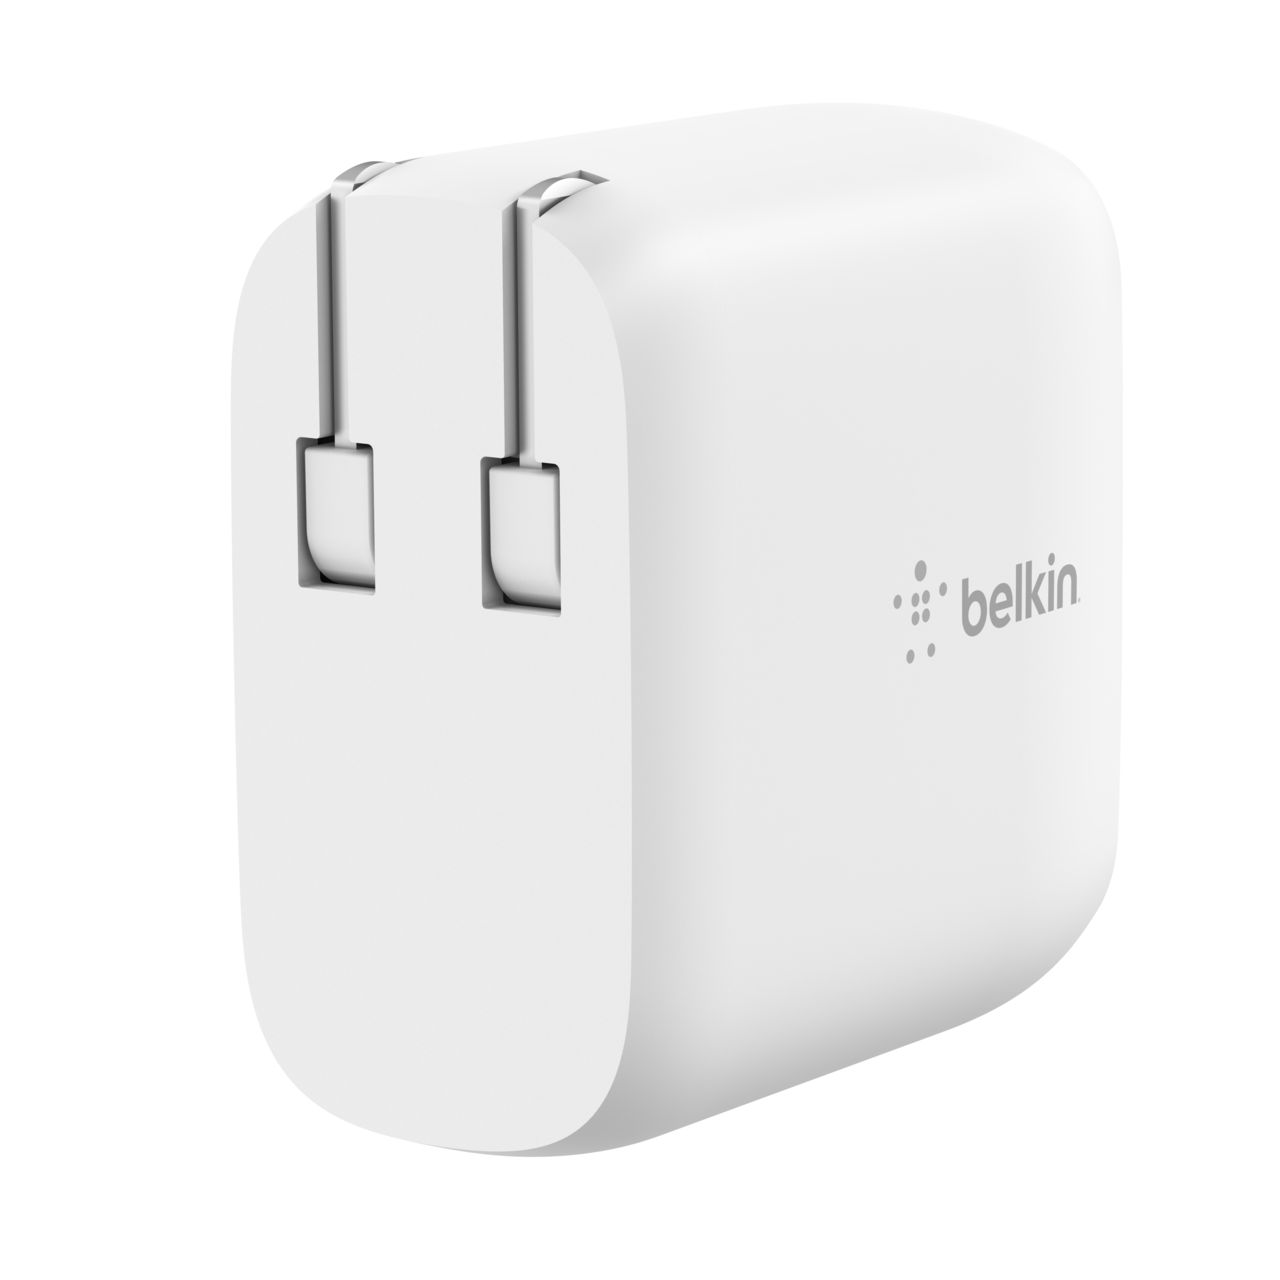 Belkin BELKIN AC 40W NETBOOK MULTI POWER ADAPTER WITH USB PORT F5L064 722868741108 